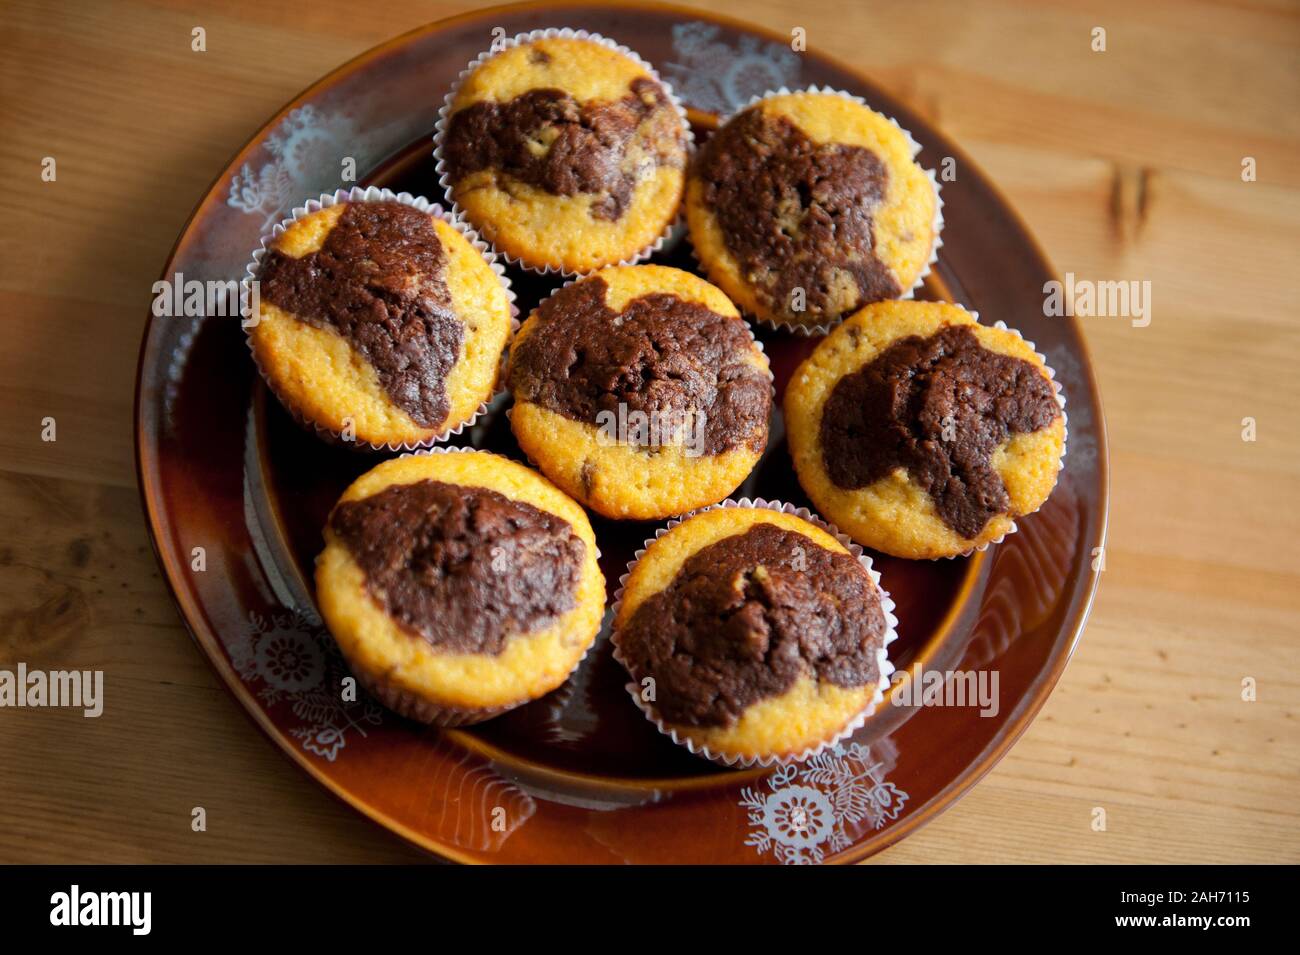 Chocolate limón muffins caseros, pocos duo degustar deliciosos pastelitos acostado en placa de color marrón oscuro sobre la mesa, dulces, vista desde arriba, alimentos horneados. Foto de stock